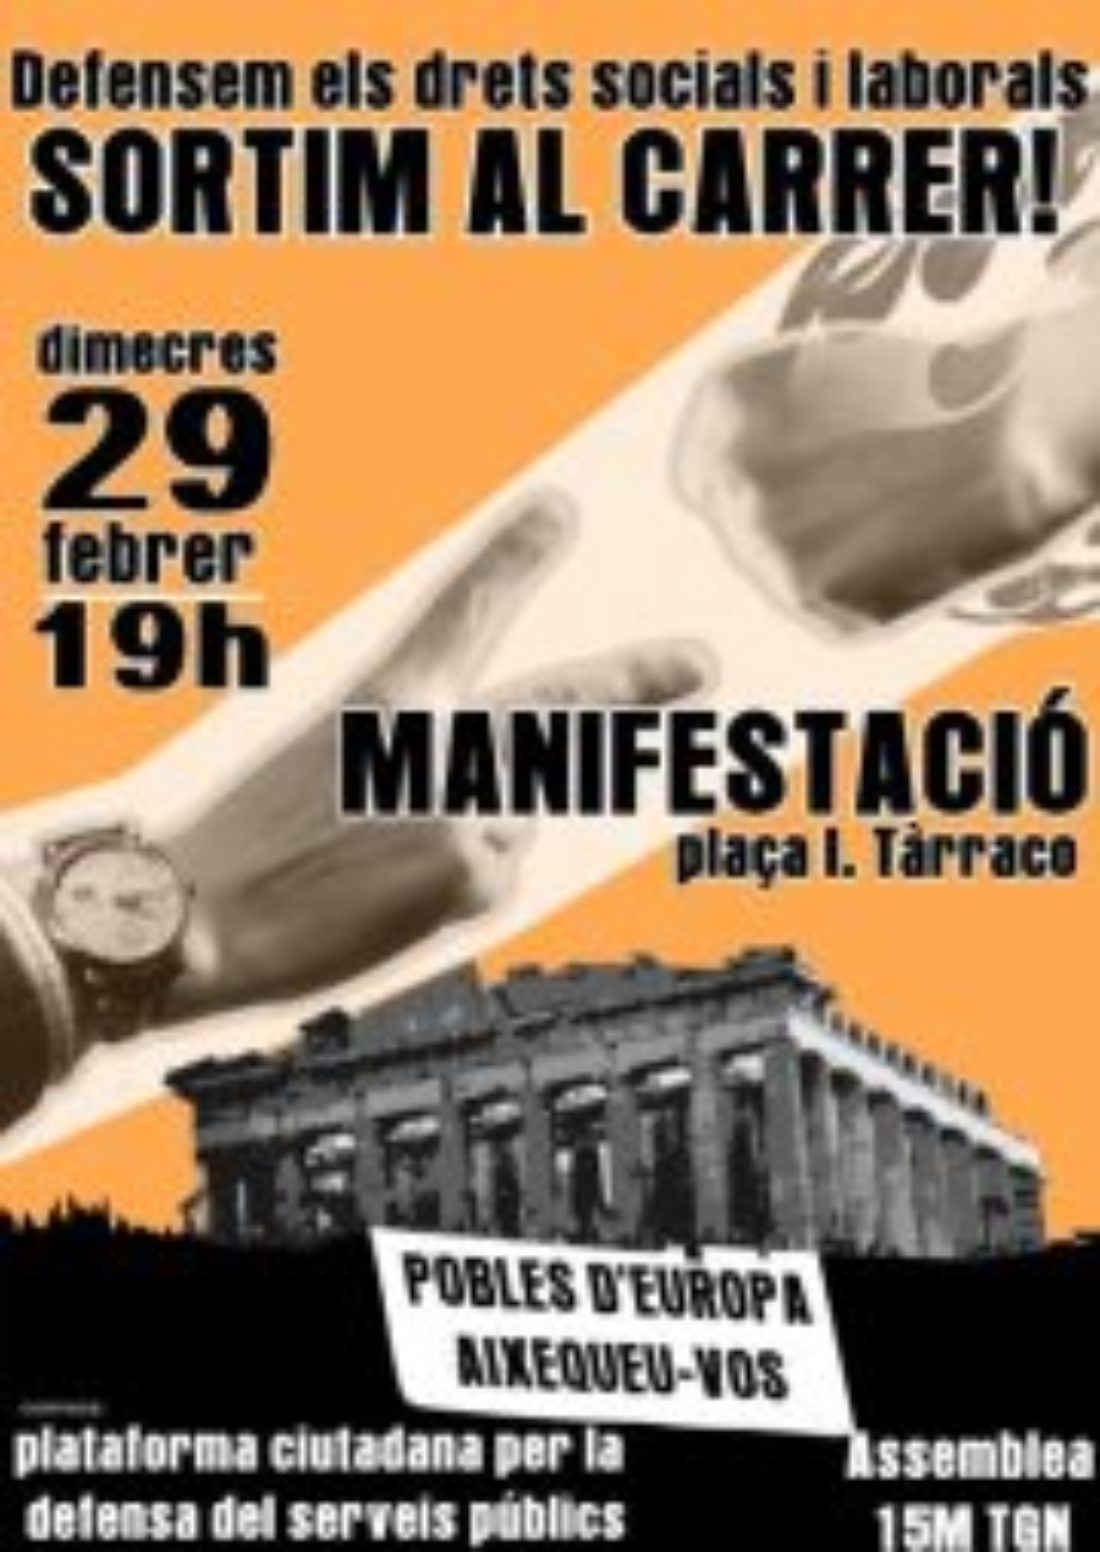 Tarragona: ¡Defendamos los derechos sociales y laborales, salgamos a la calle!